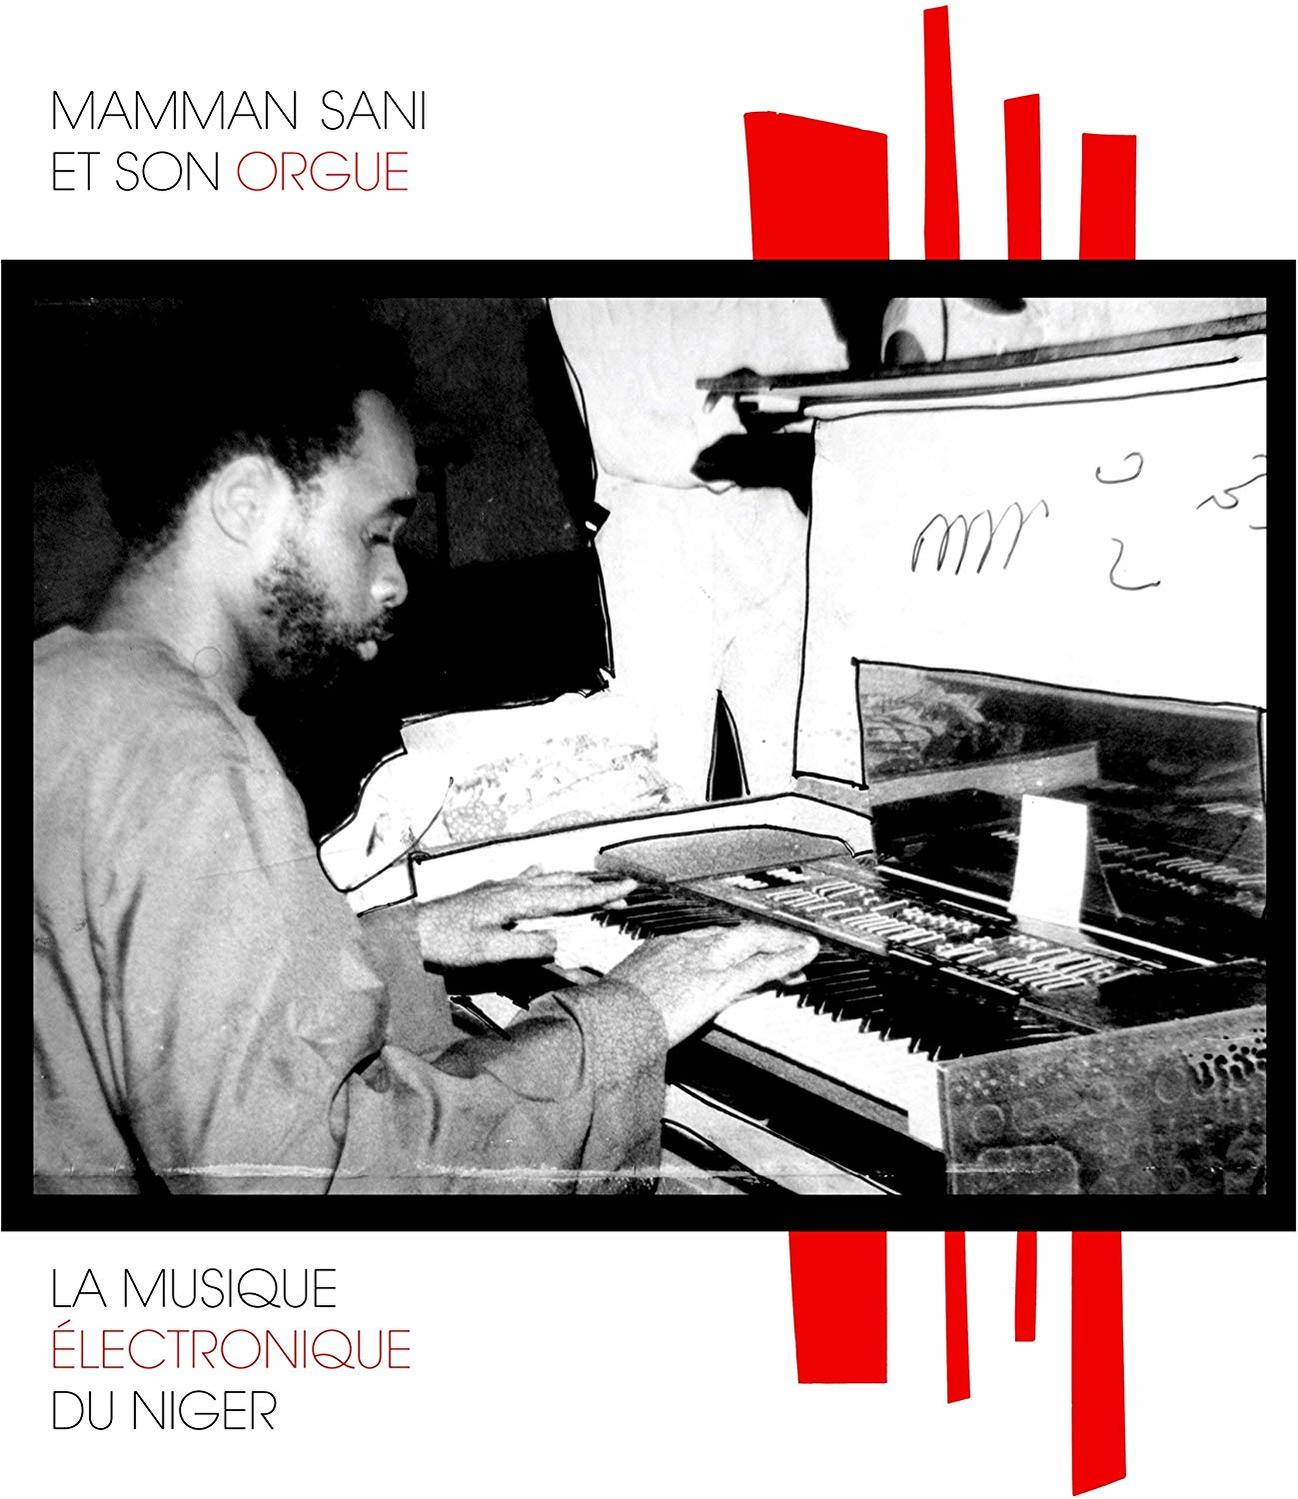 MUSIQUE - - Mammane NIGER DU ELECTRONIQUE LA Sani (Vinyl)